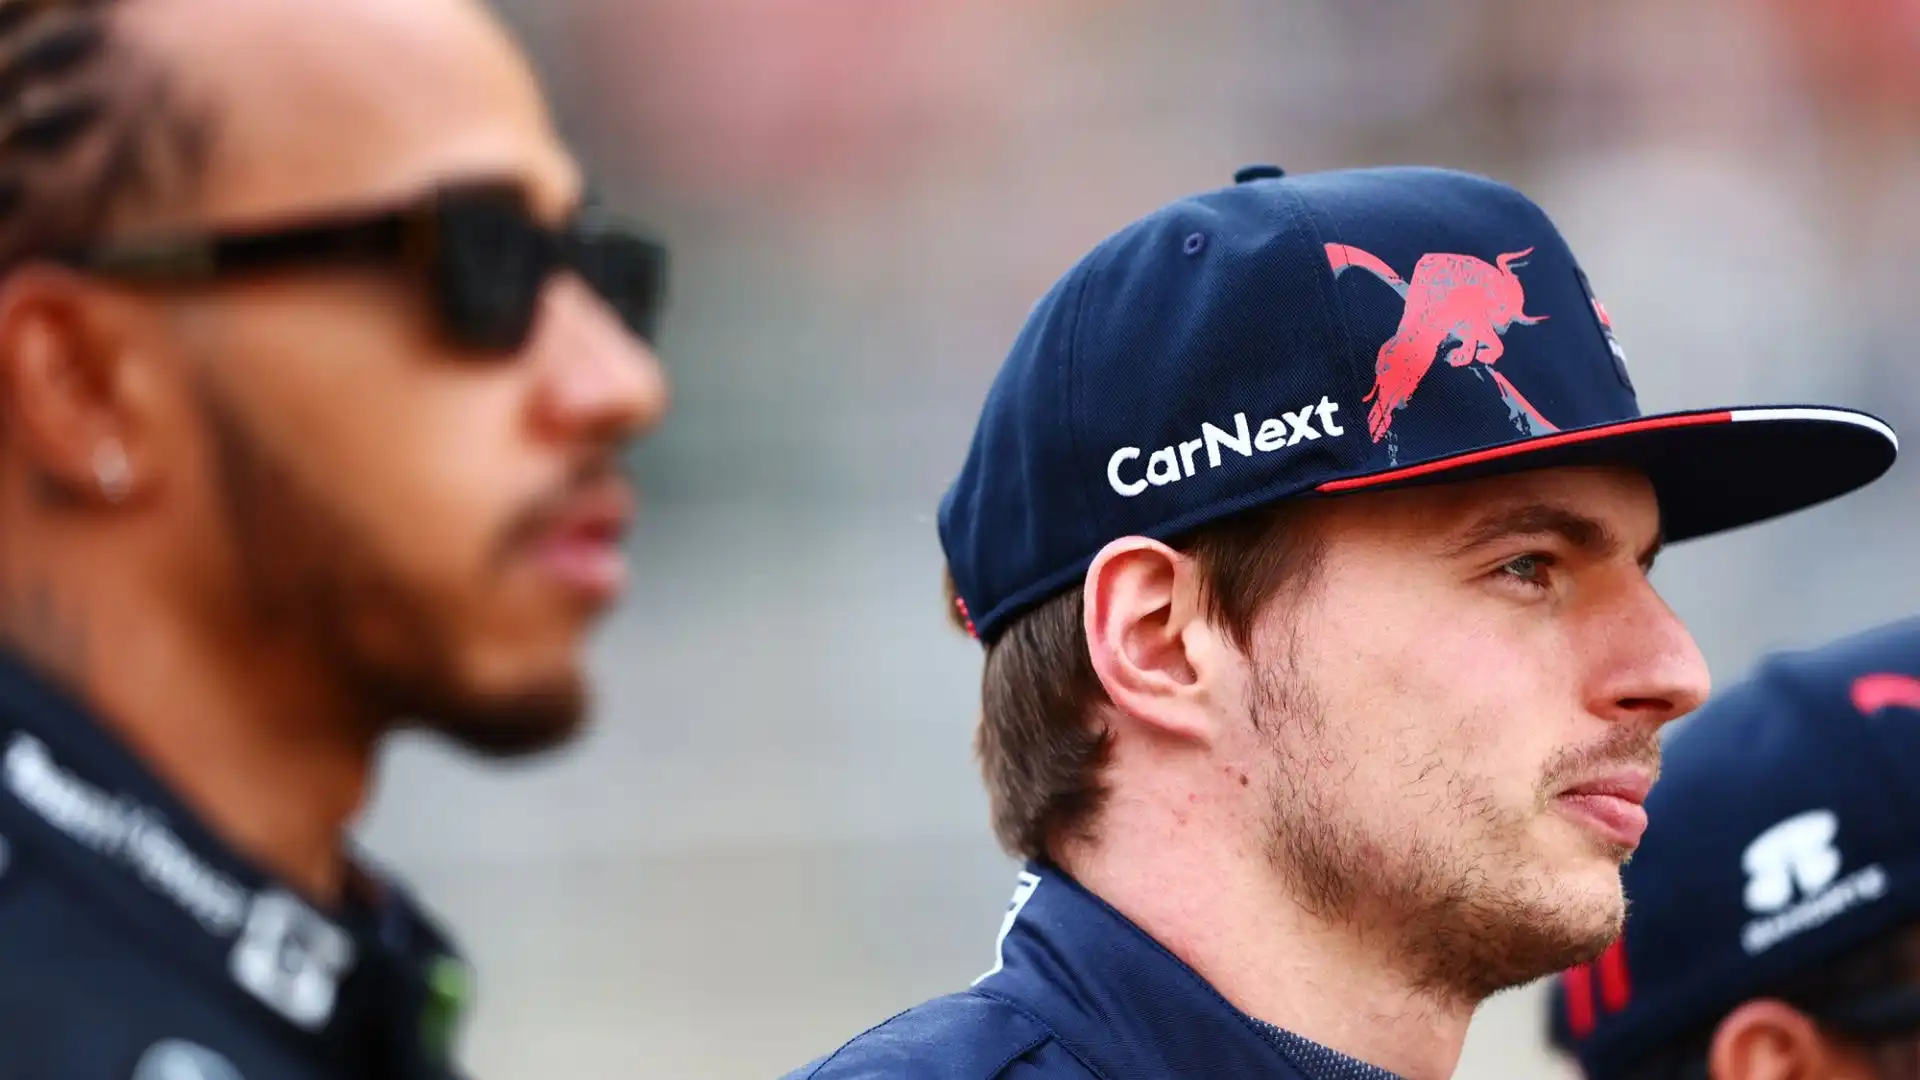 L'ex pilota finlandese si è espresso senza dubbi: "Probabilmente sceglierei Lewis Hamilton".